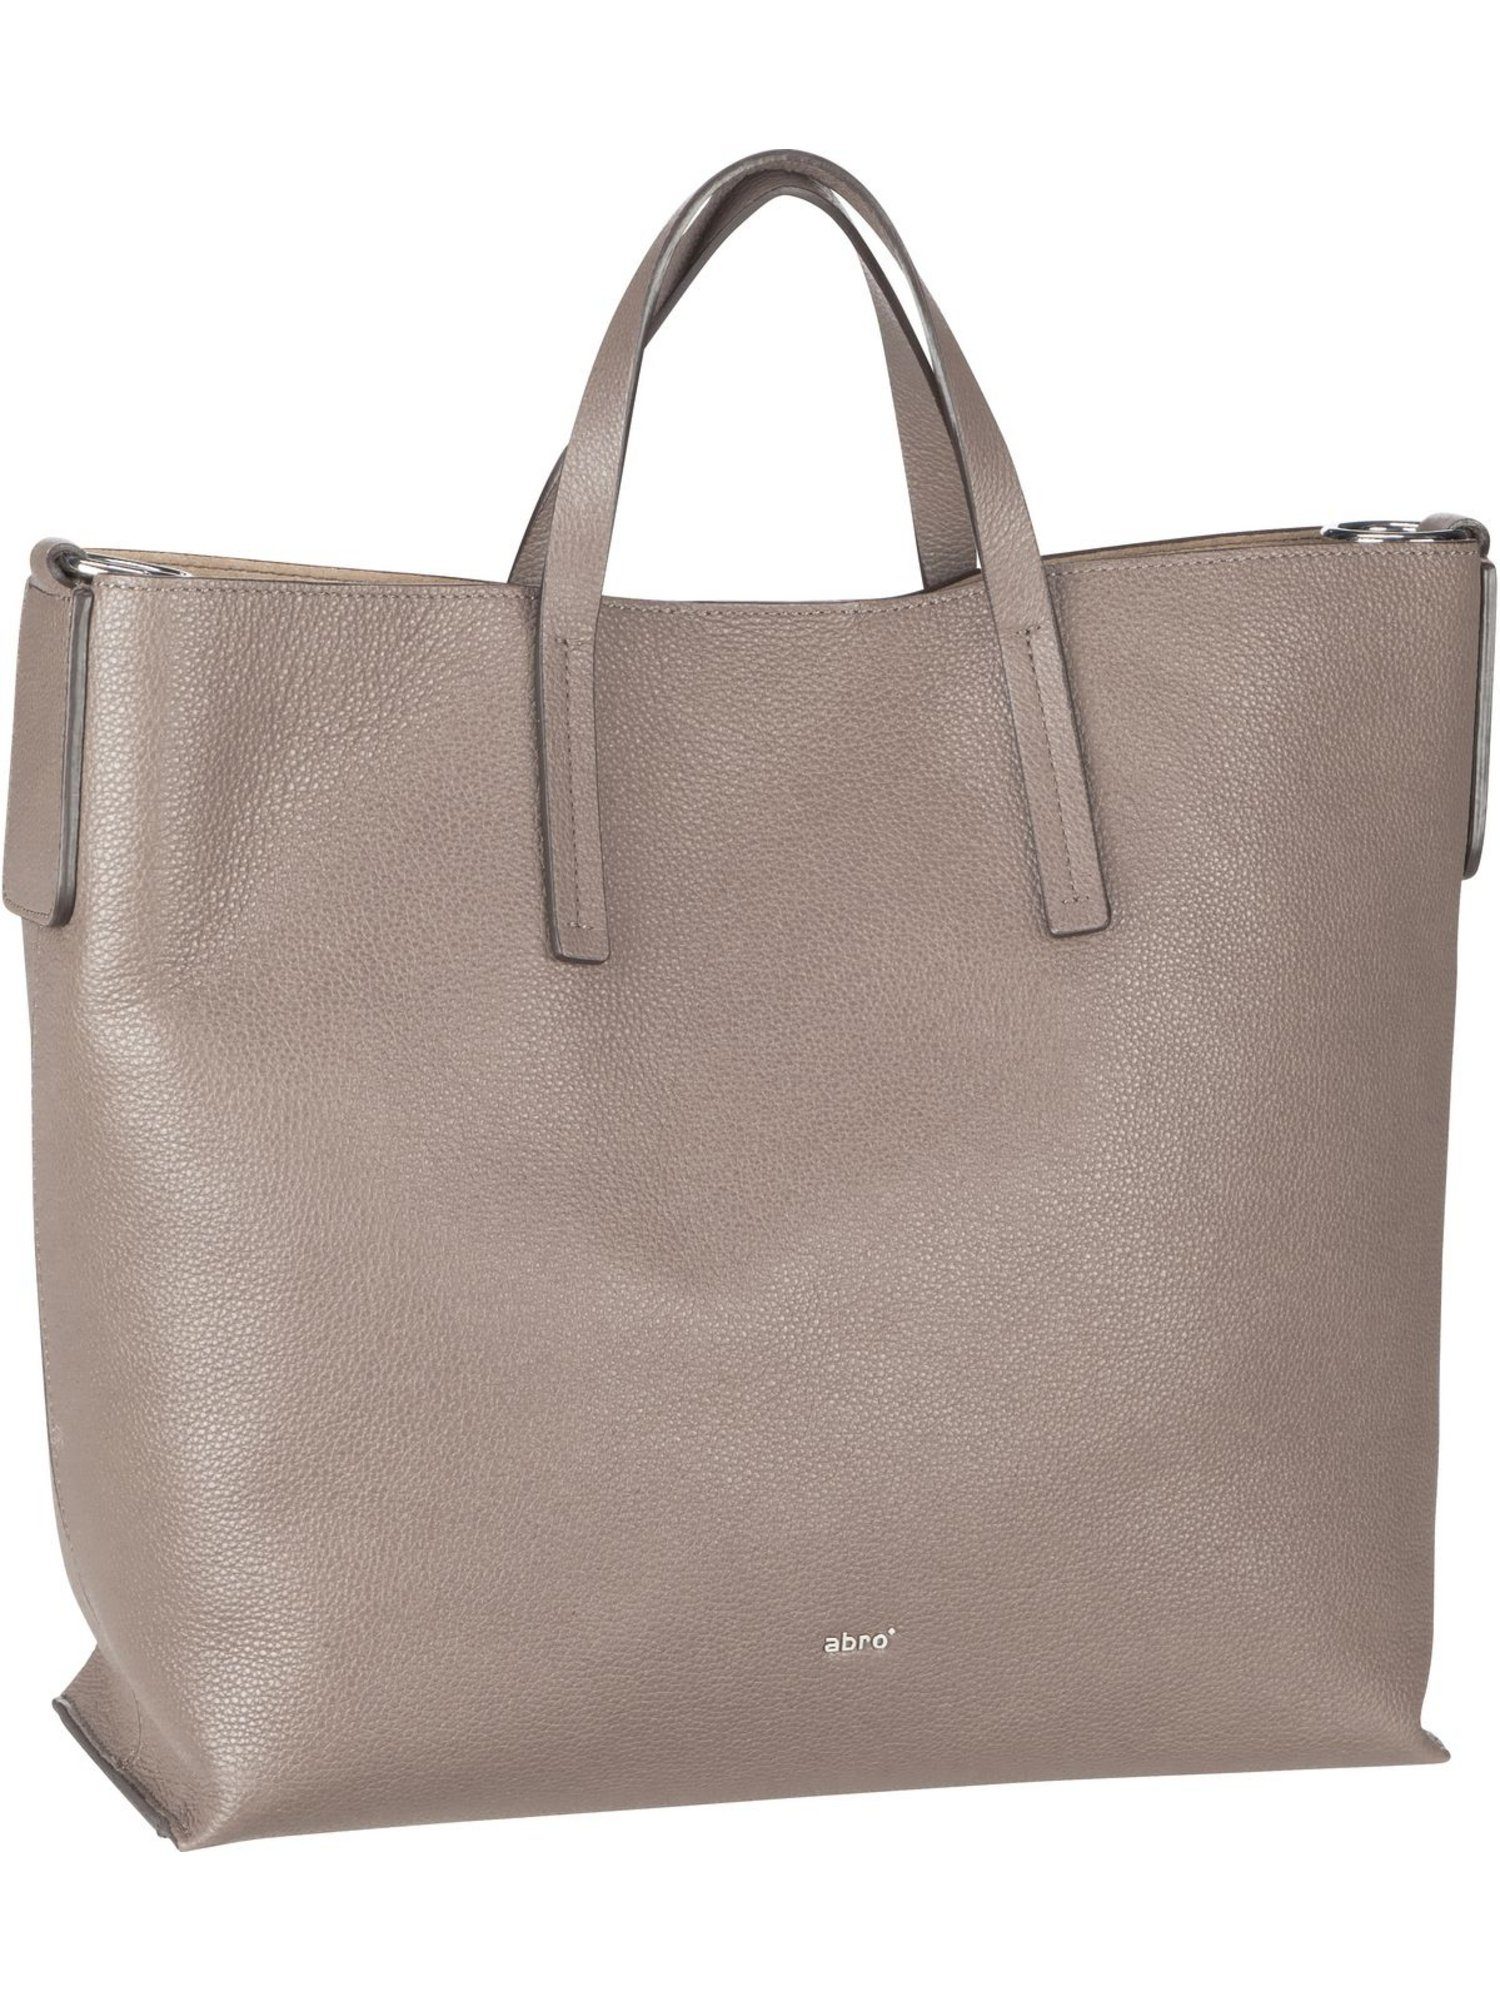 Abro Handtasche »Julie 29401«, Shopper, Shopper online kaufen | OTTO